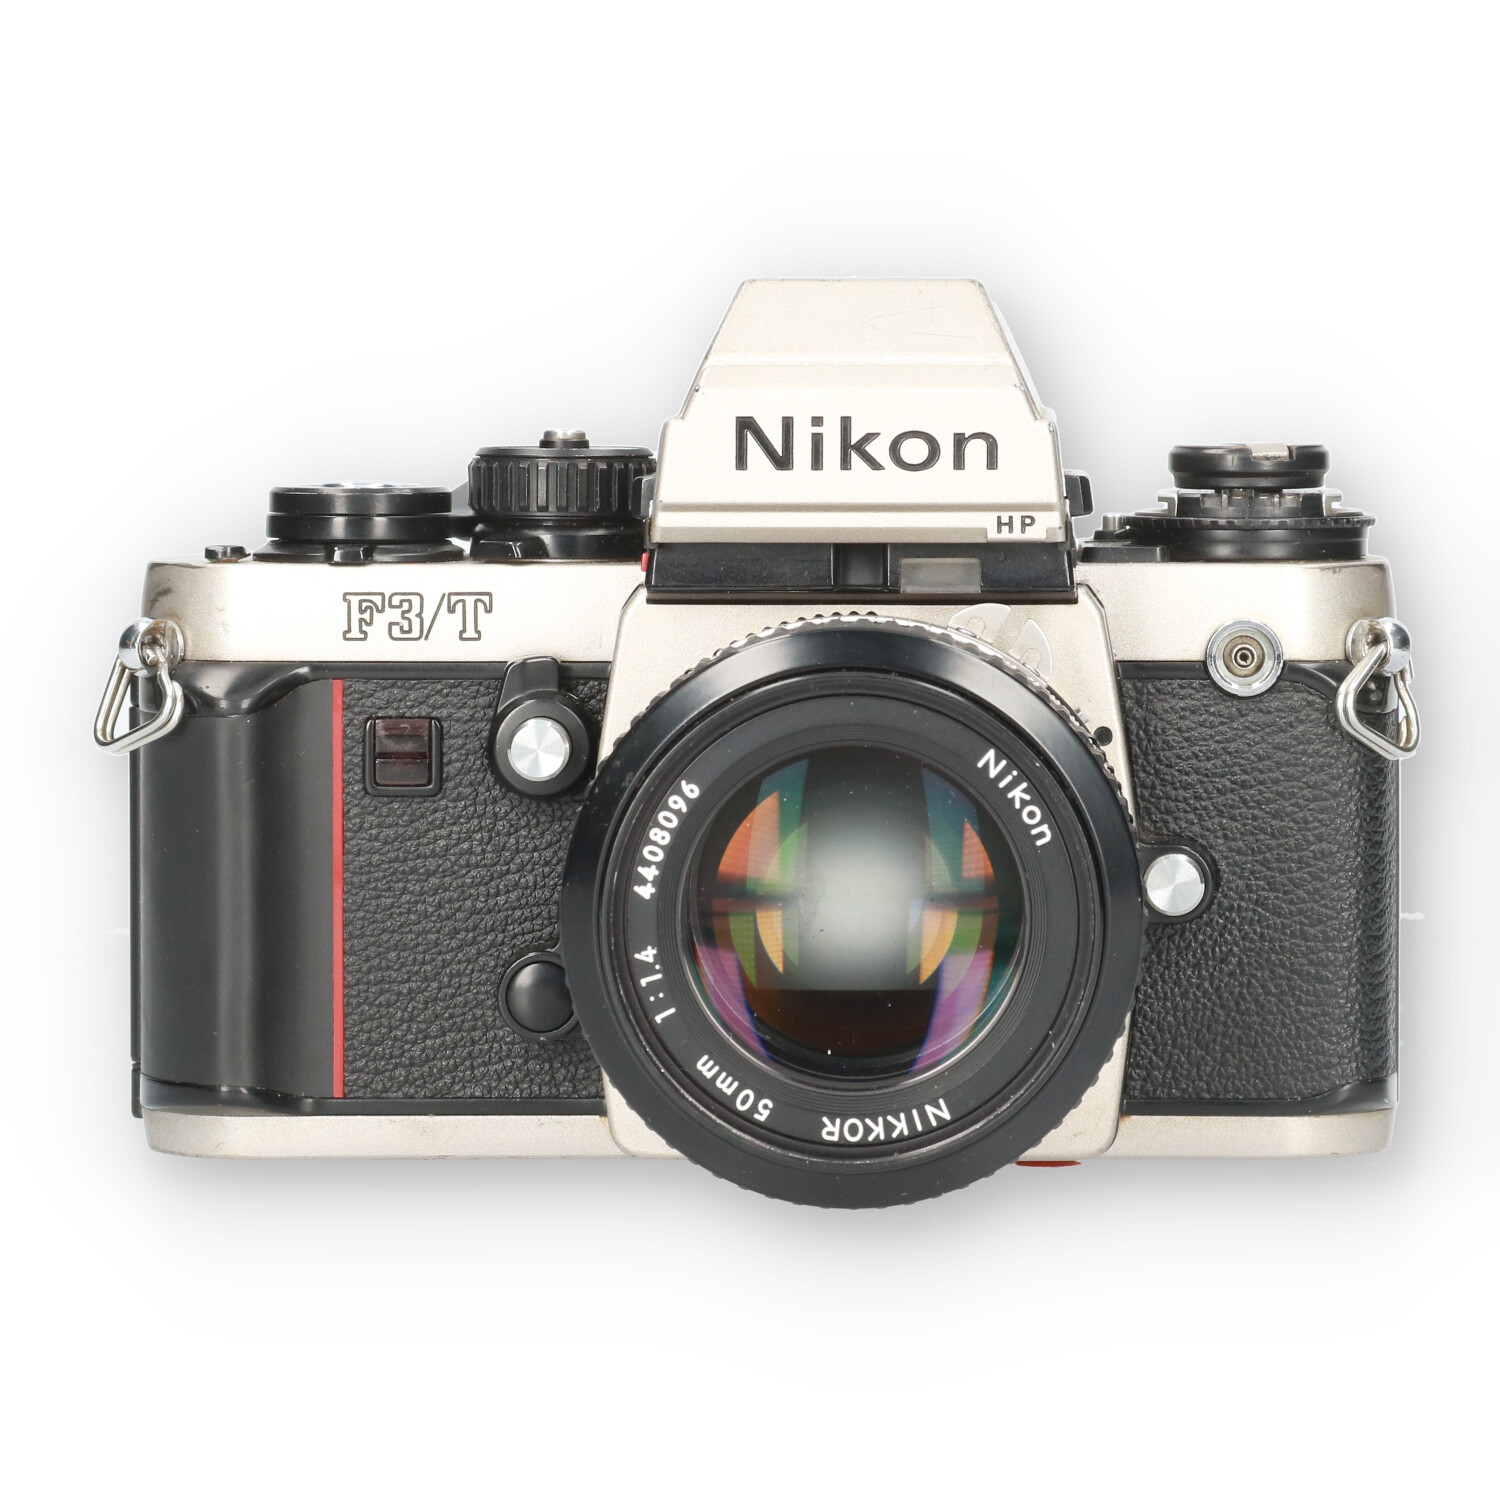 Nikon F3T HP + Ai 50mm f/1.4 - No-Digital